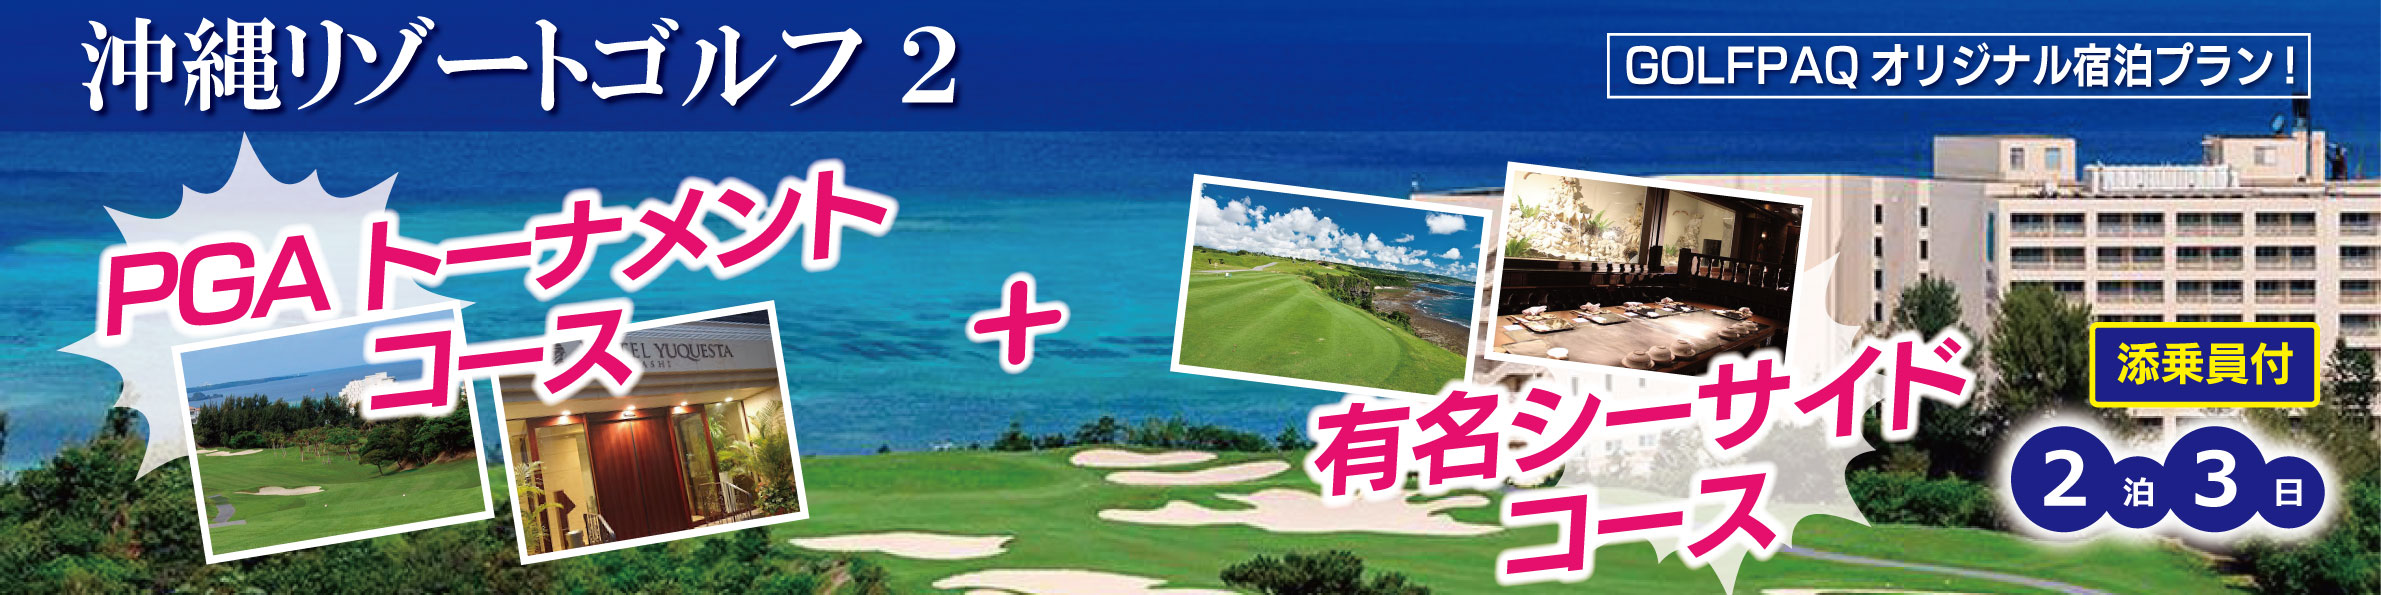 沖縄リゾートゴルフ